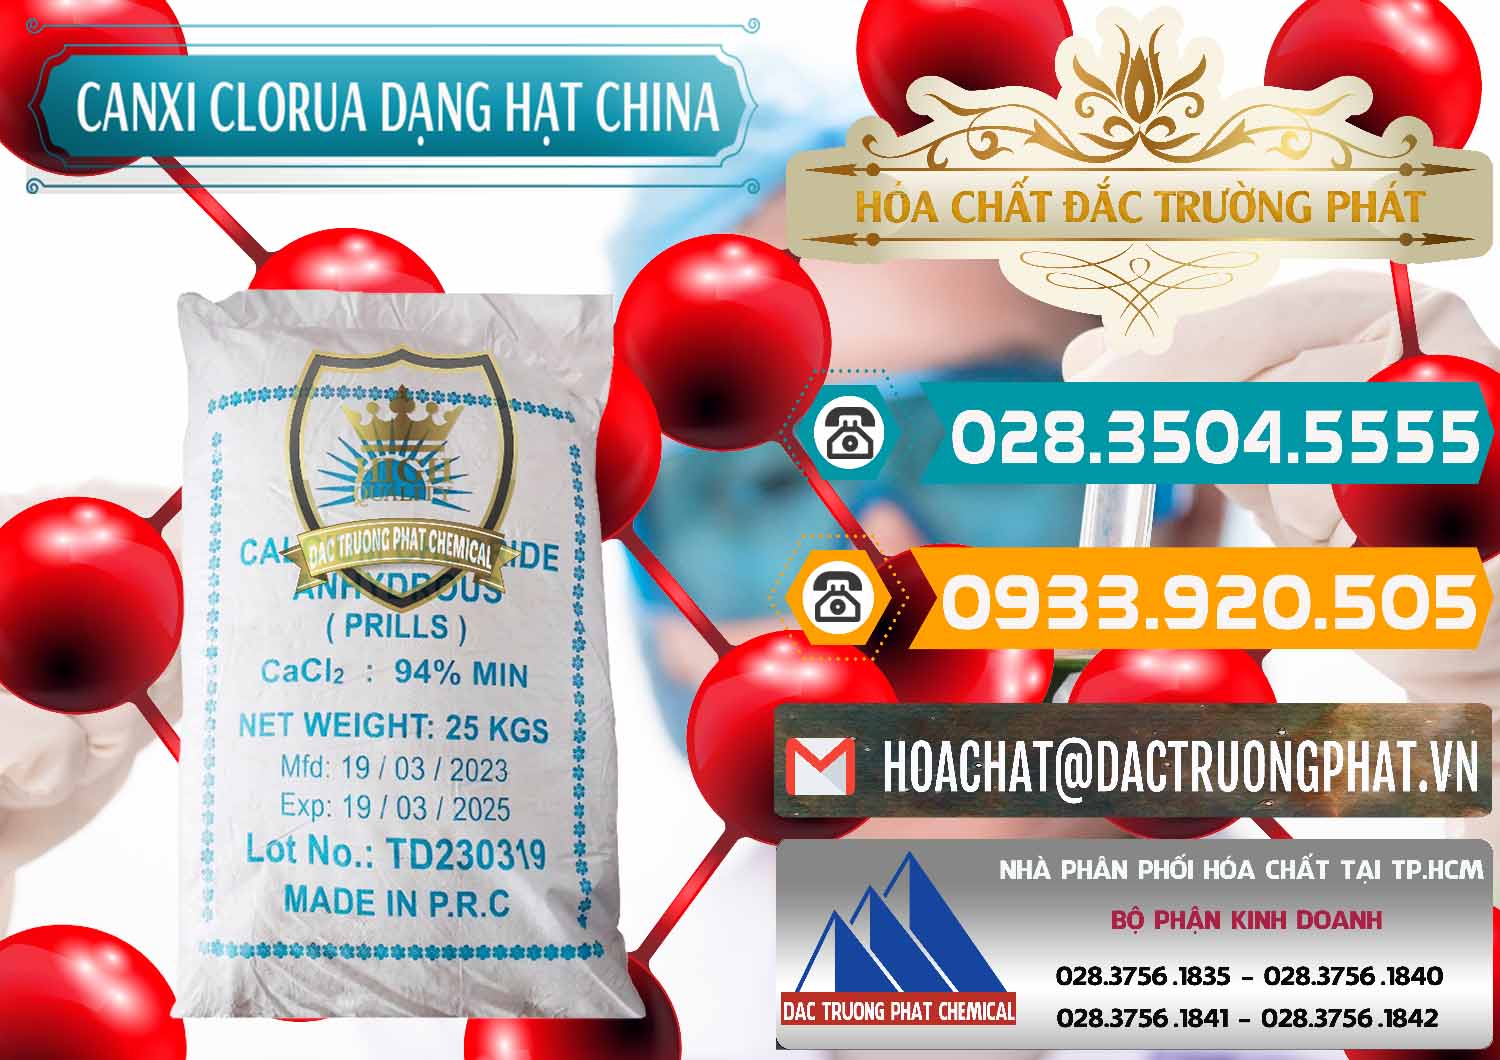 Cty chuyên bán & cung cấp CaCl2 – Canxi Clorua 94% Dạng Hạt Trung Quốc China - 0373 - Đơn vị nhập khẩu ( phân phối ) hóa chất tại TP.HCM - congtyhoachat.vn